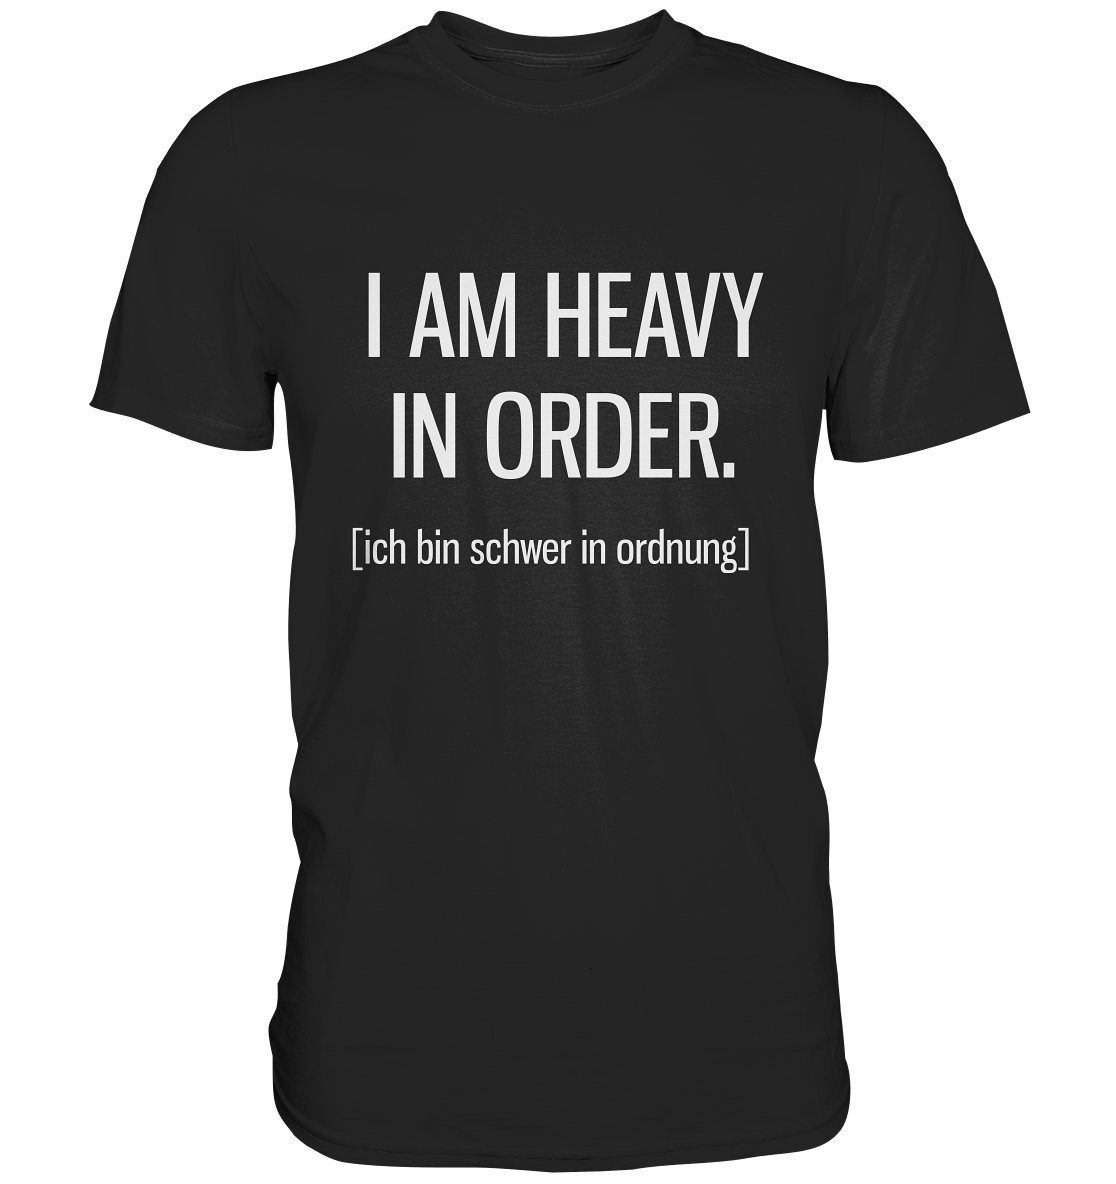 I am heavy in order. Englisch - Unisex Premium Shirt